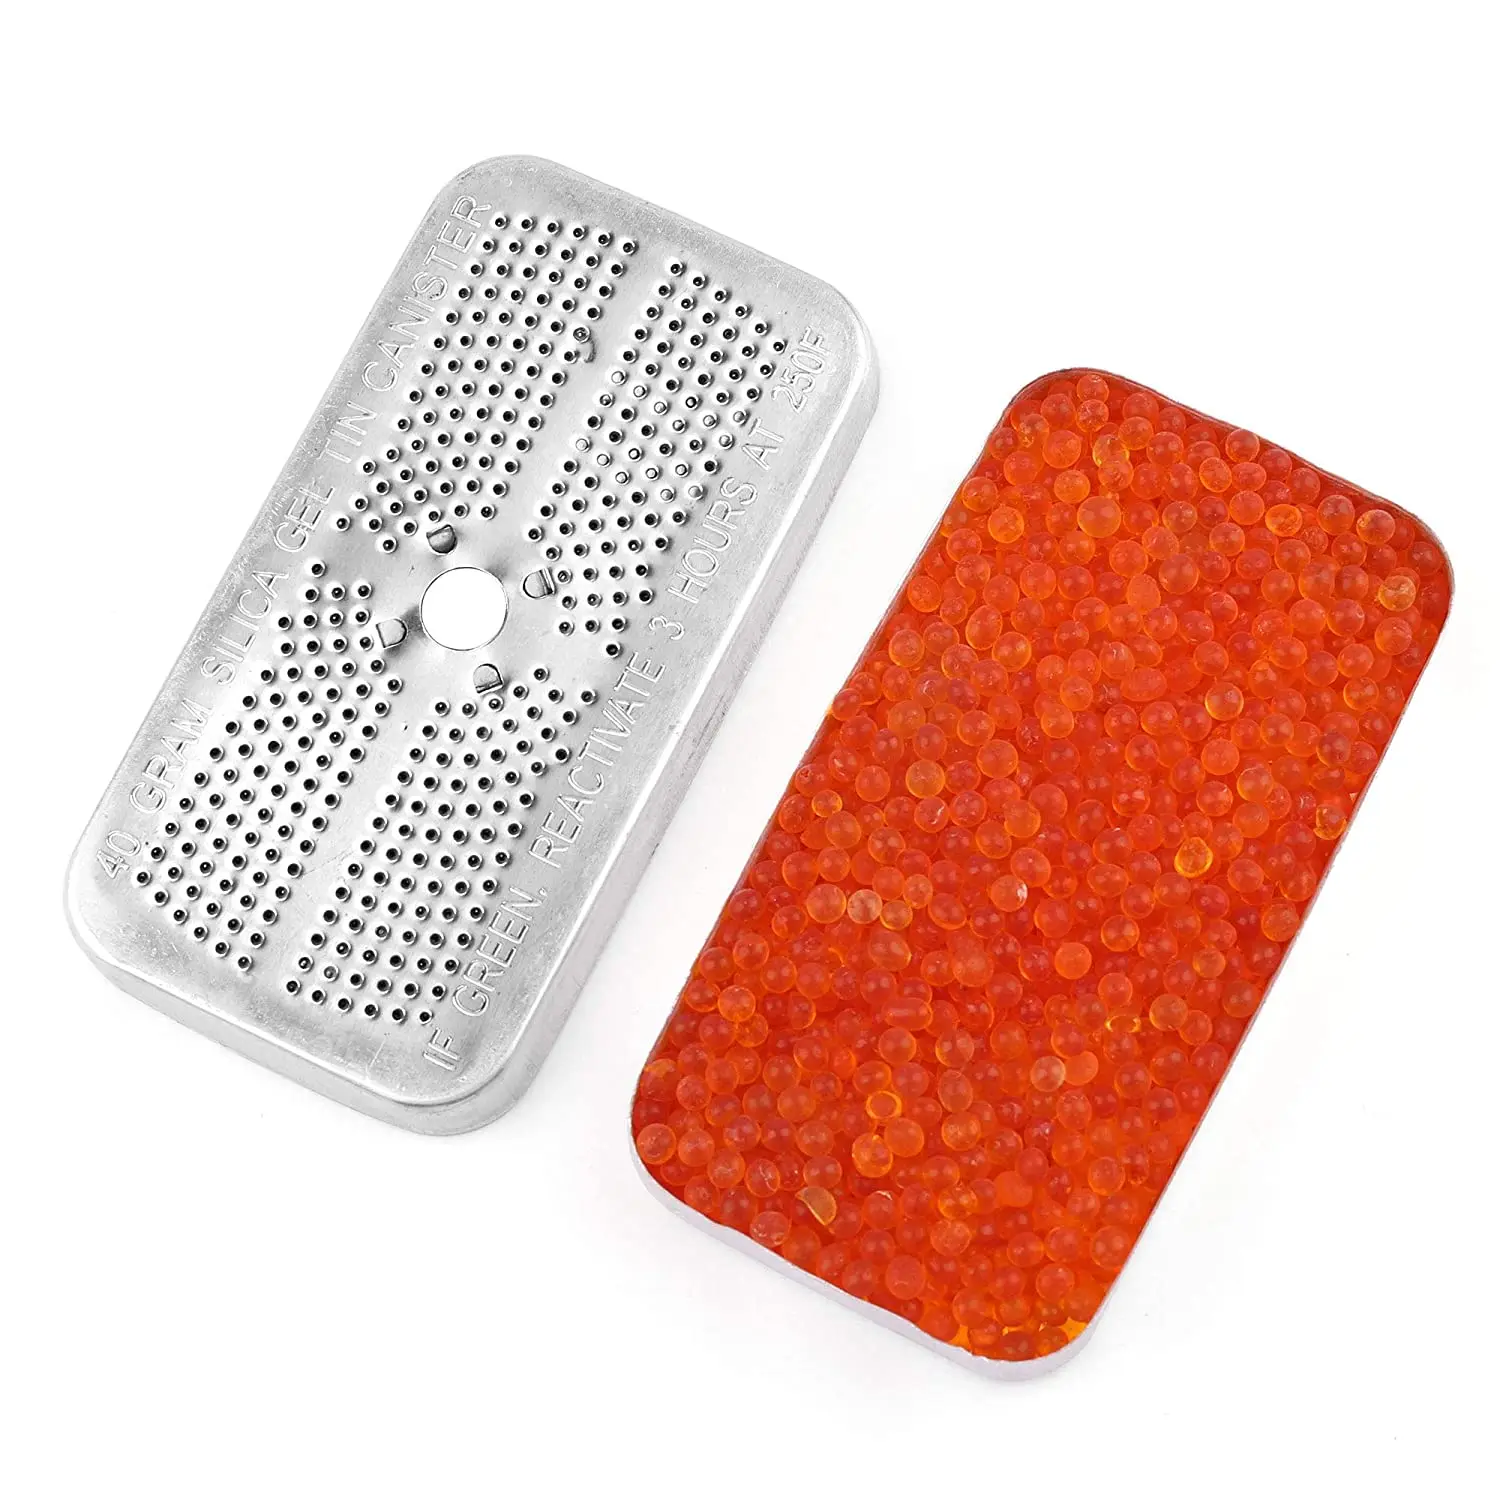 色が変わるオレンジ色のシリカゲルを示す吸湿剤シリカゲル Buy シリカゲルオレンジ色インジケータ乾燥剤 示すシリカゲル 乾燥剤キャニスター Product On Alibaba Com